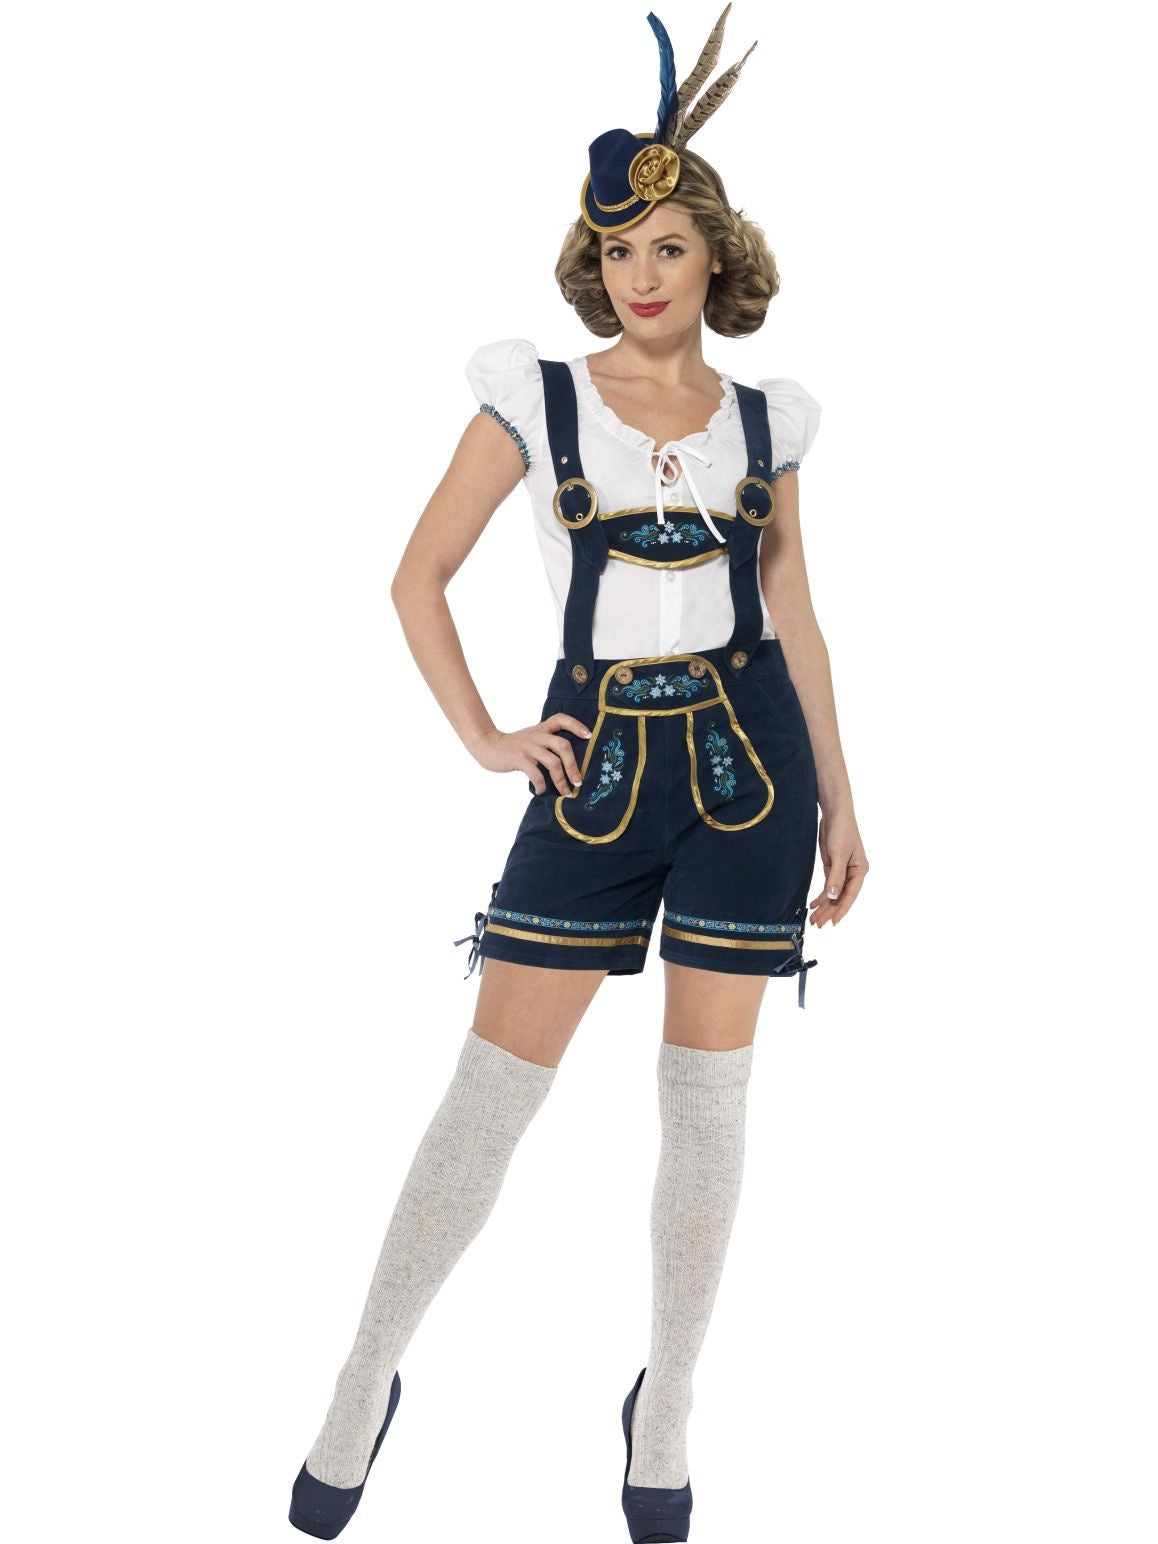 Traditional Deluxe Bavarian Lederhosen Costume